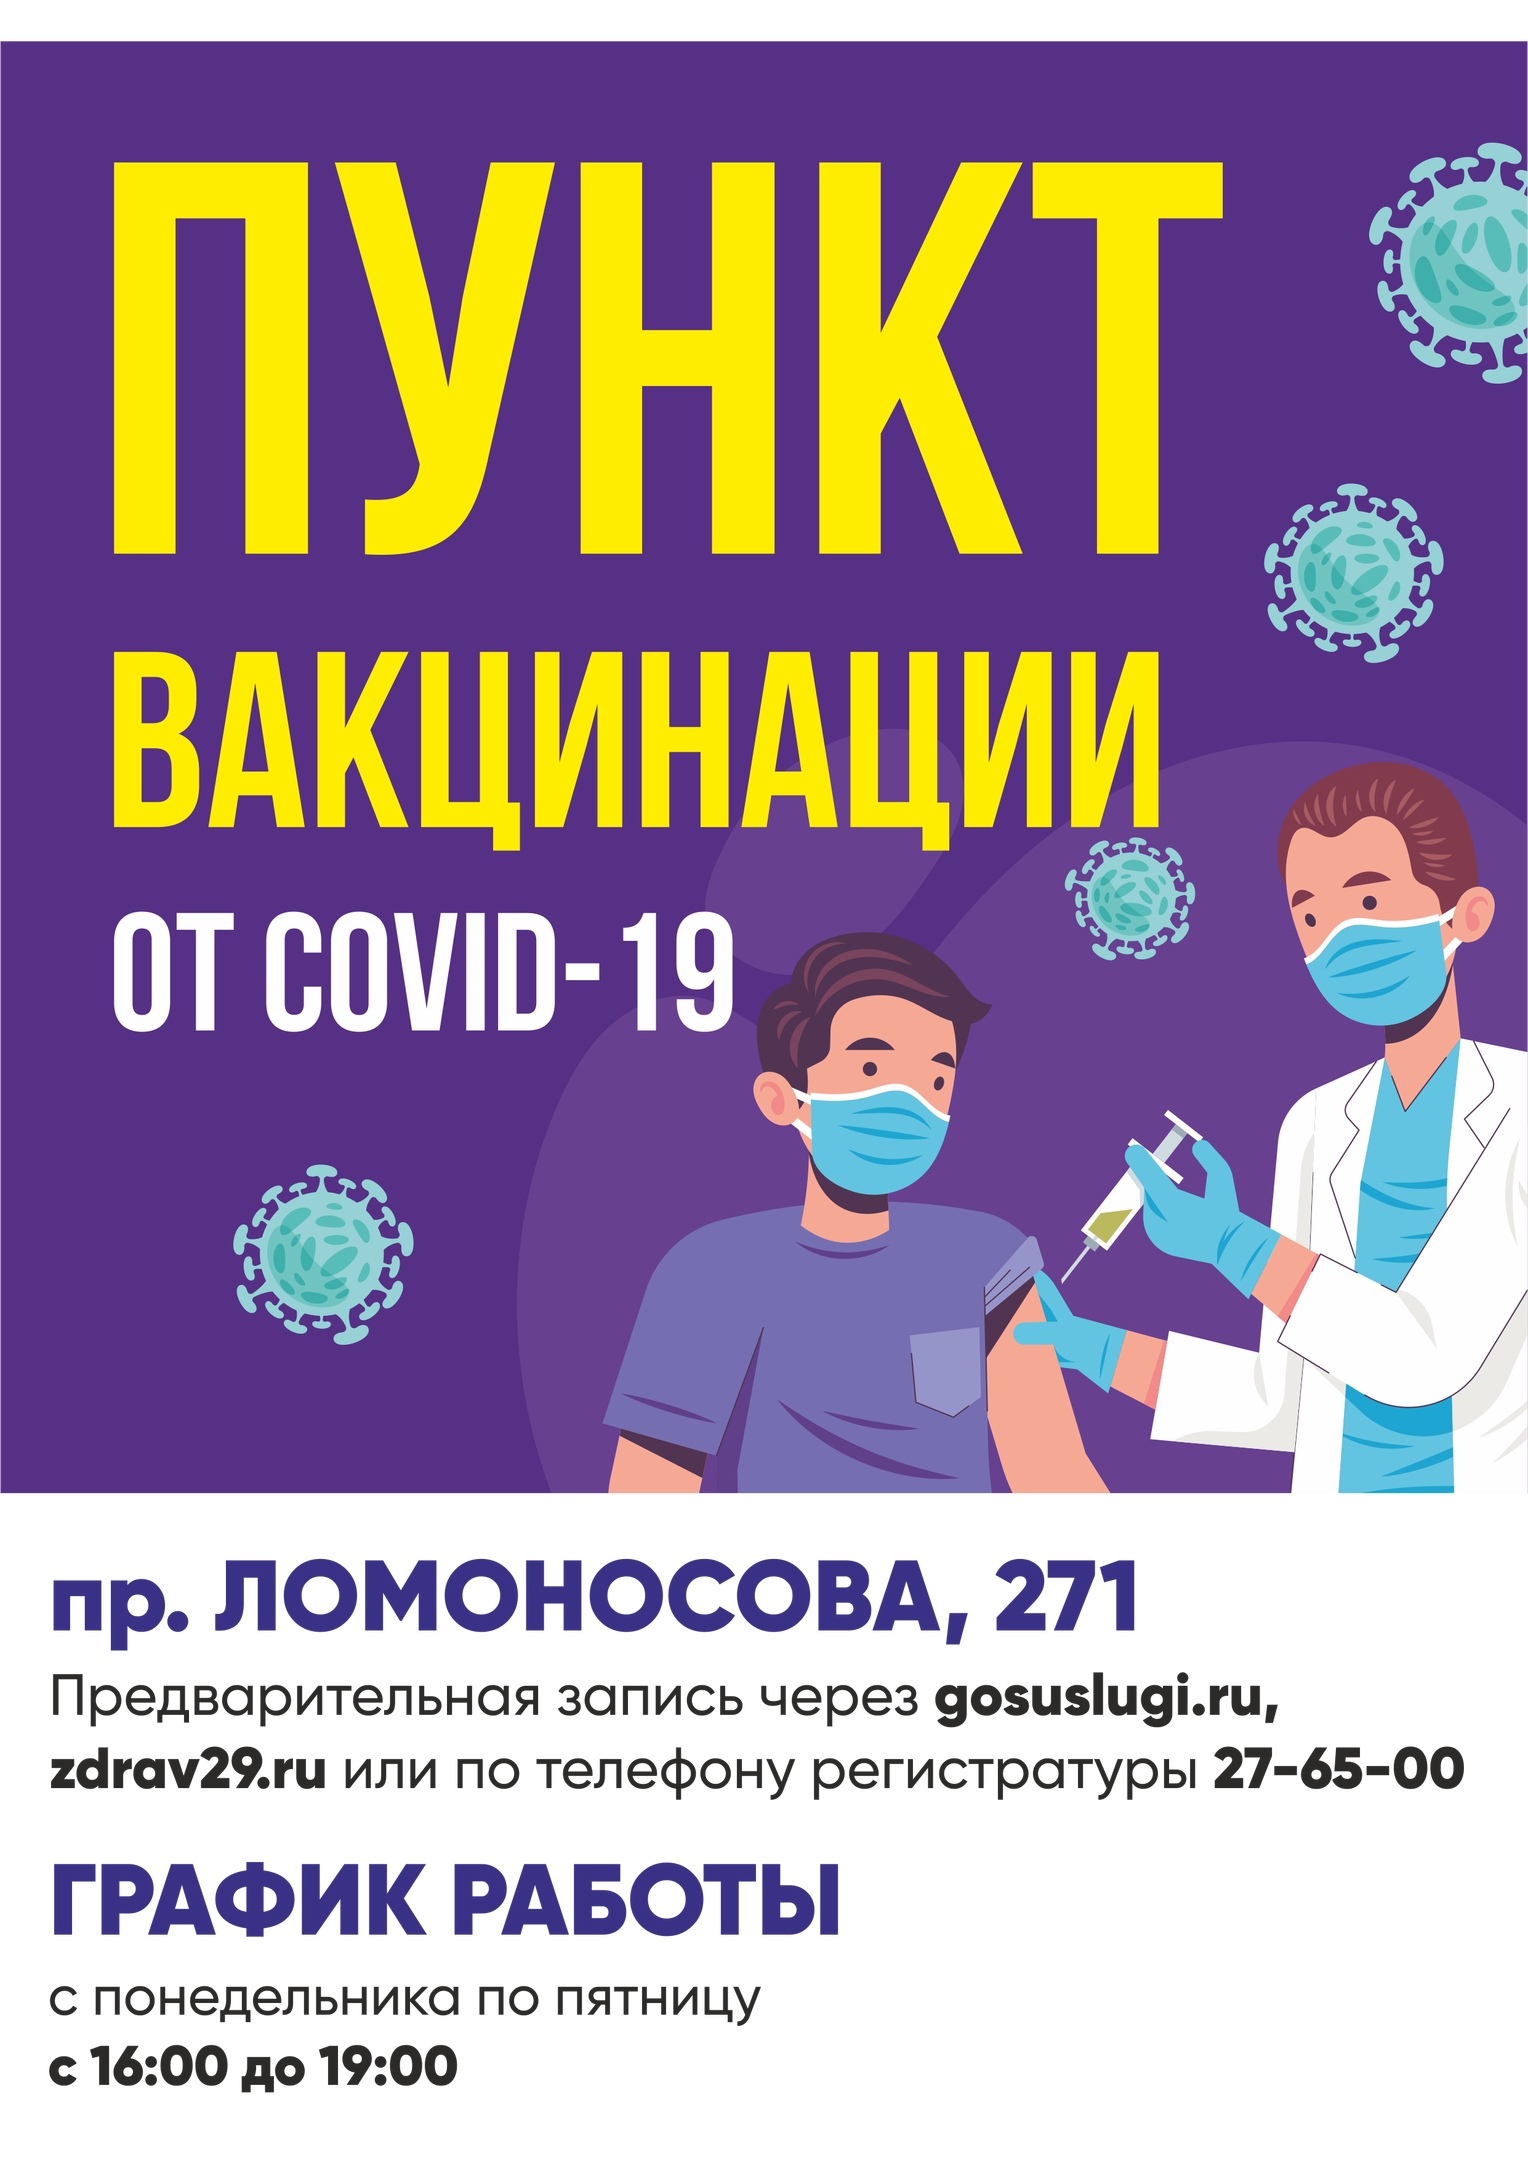 Первую партию вакцины «Спутник Лайт» распределили между медицинскими учреждениями области